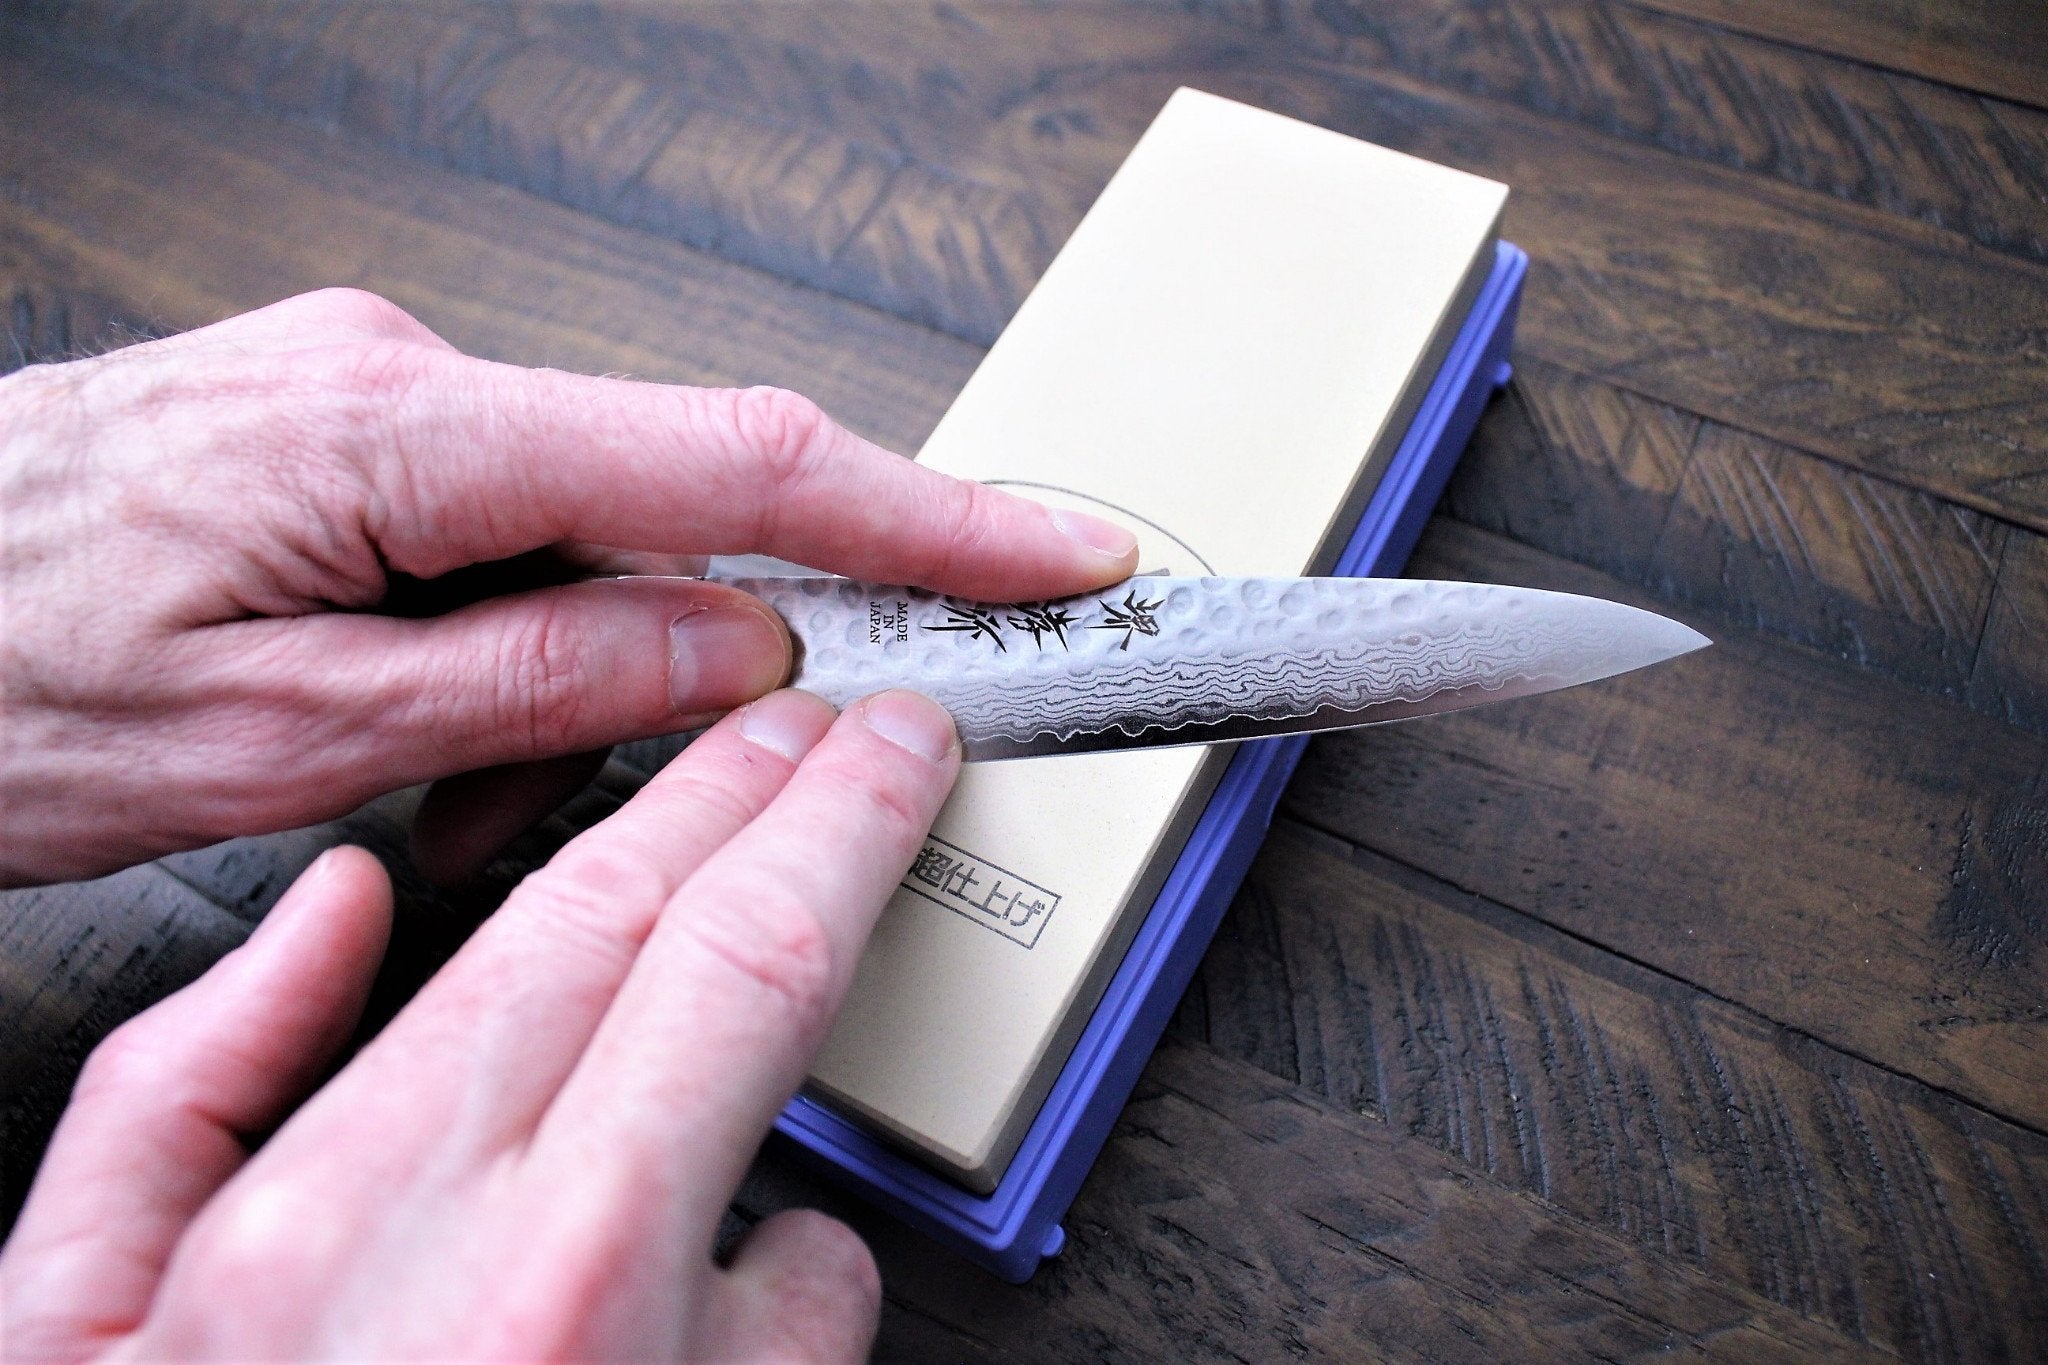 1000 Grit Japanese Whetstone Plastic Base Sharpening Knives Knife Stone Wet  Dry